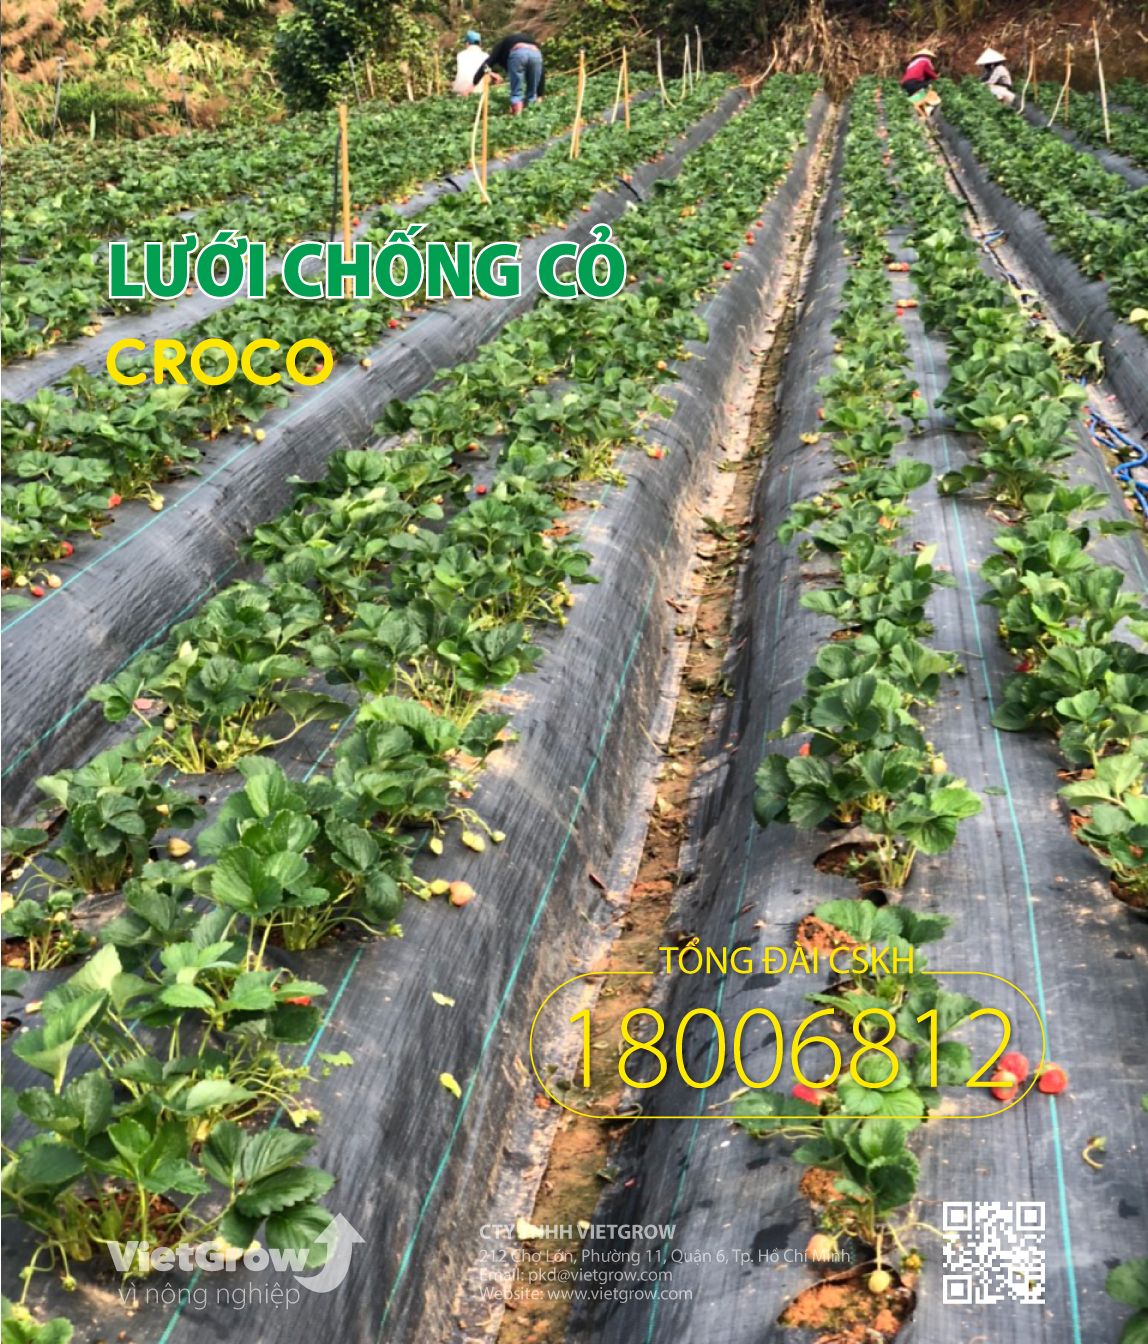  Lưới chống cỏ CROCO ( Cuộn dài 50m ) 